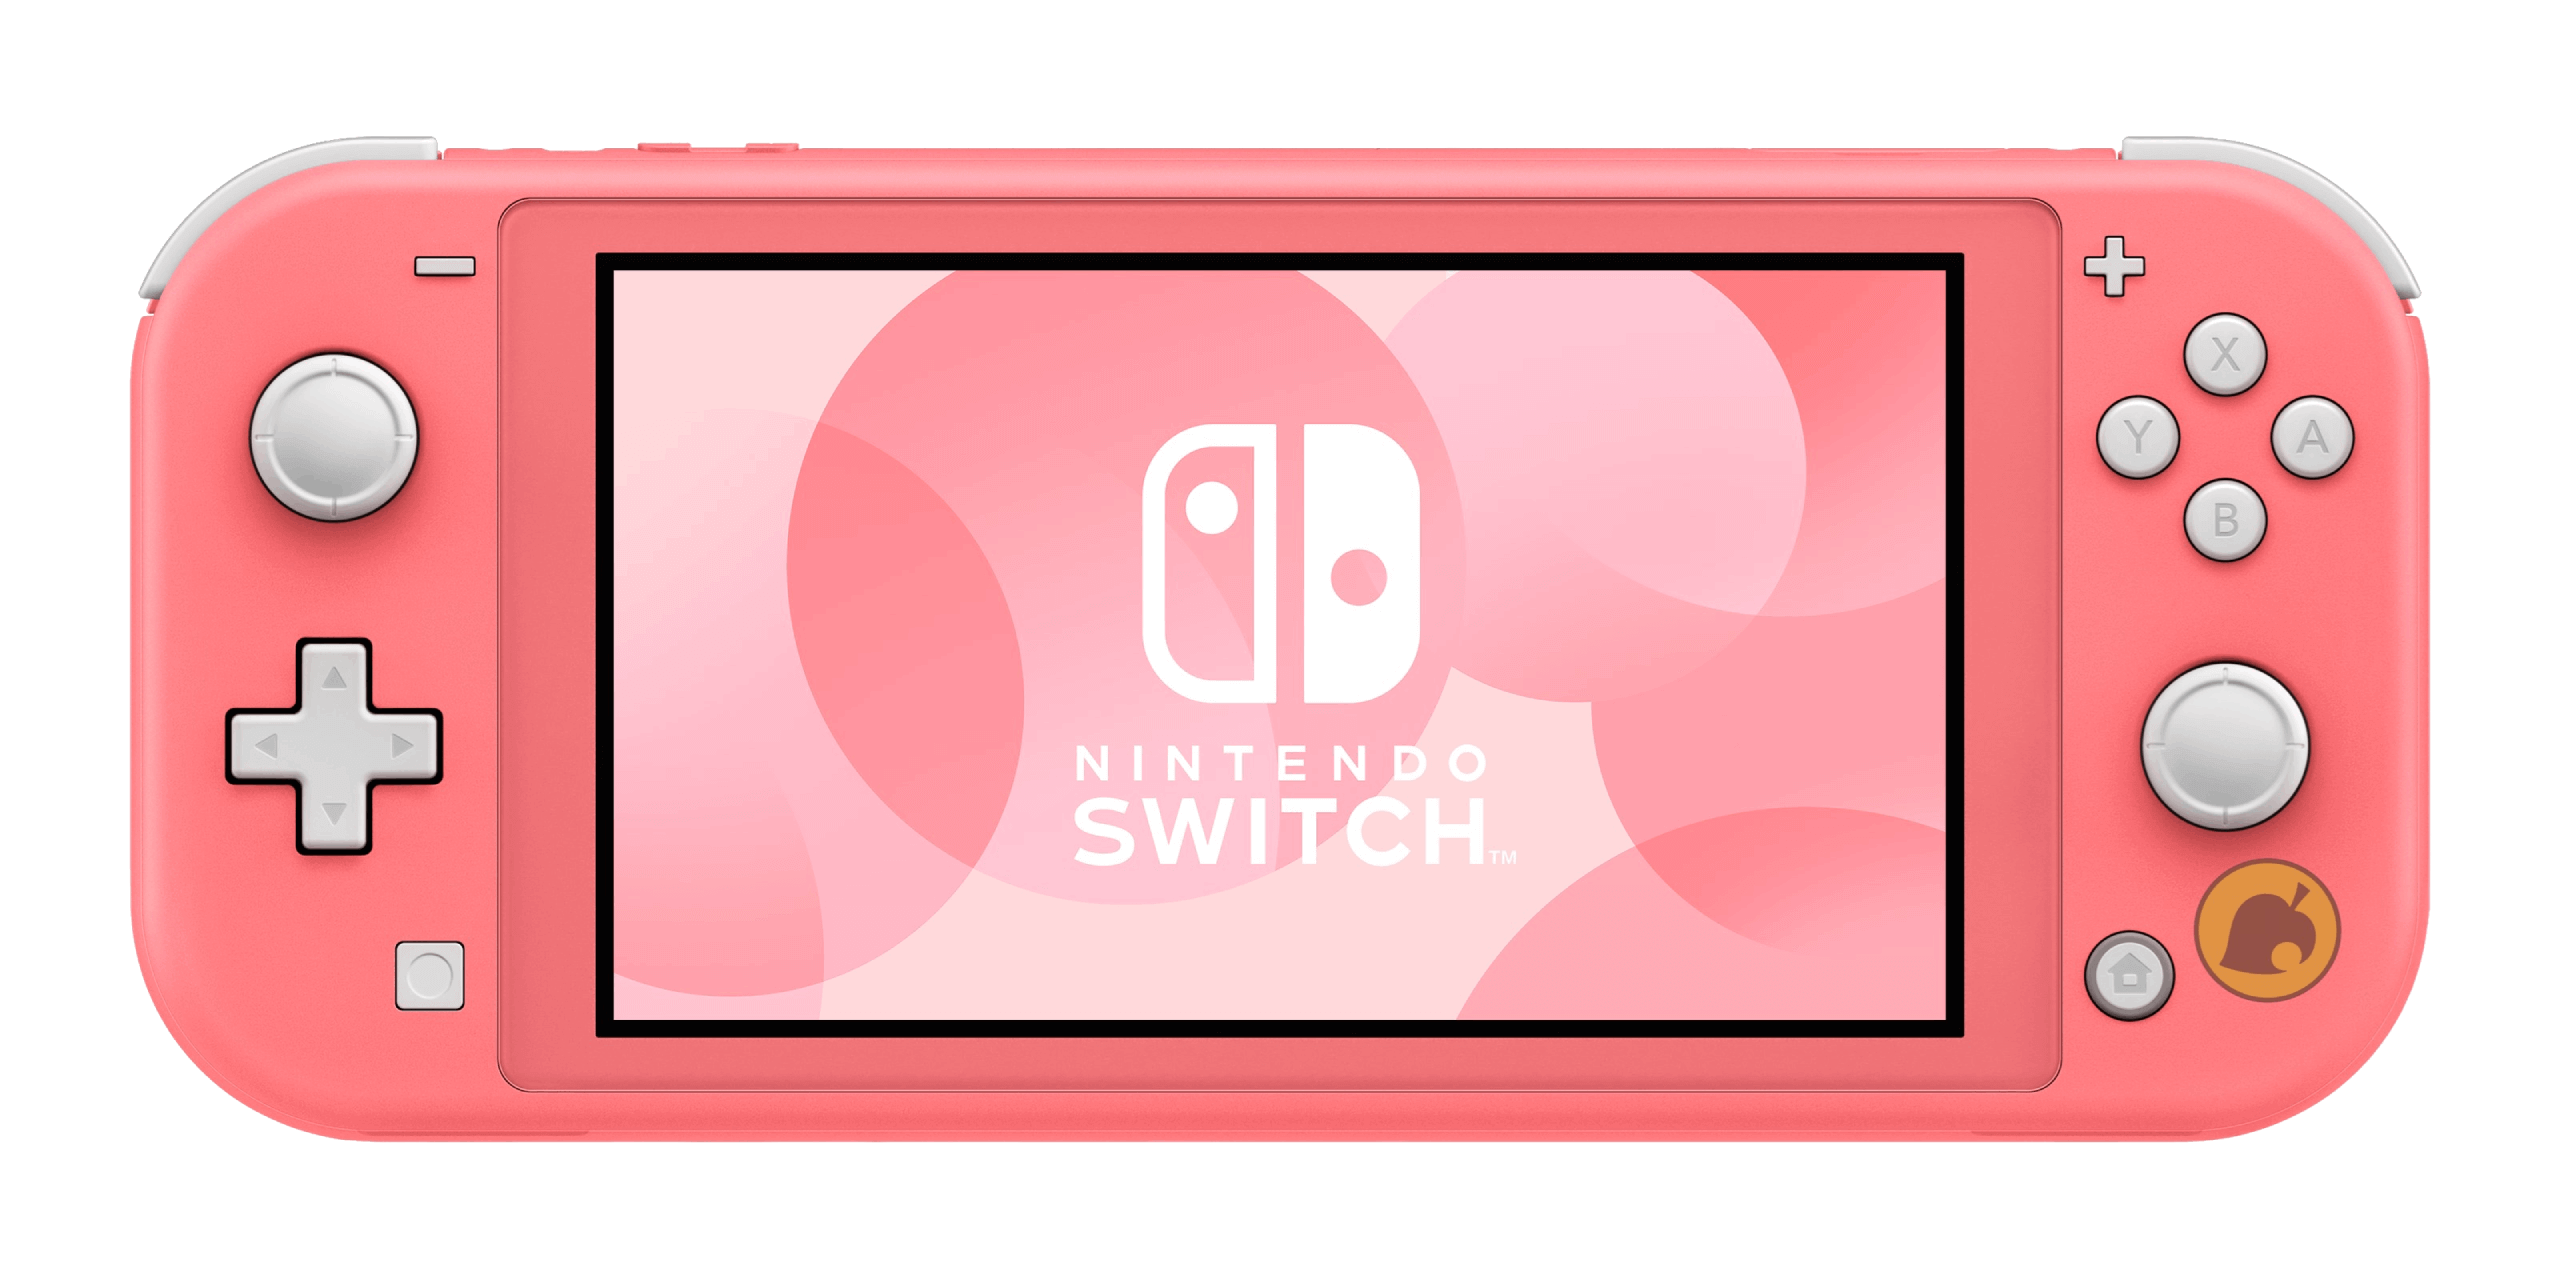 Novos modelos temáticos do Nintendo Switch são anunciados para o Brasil -  TGN